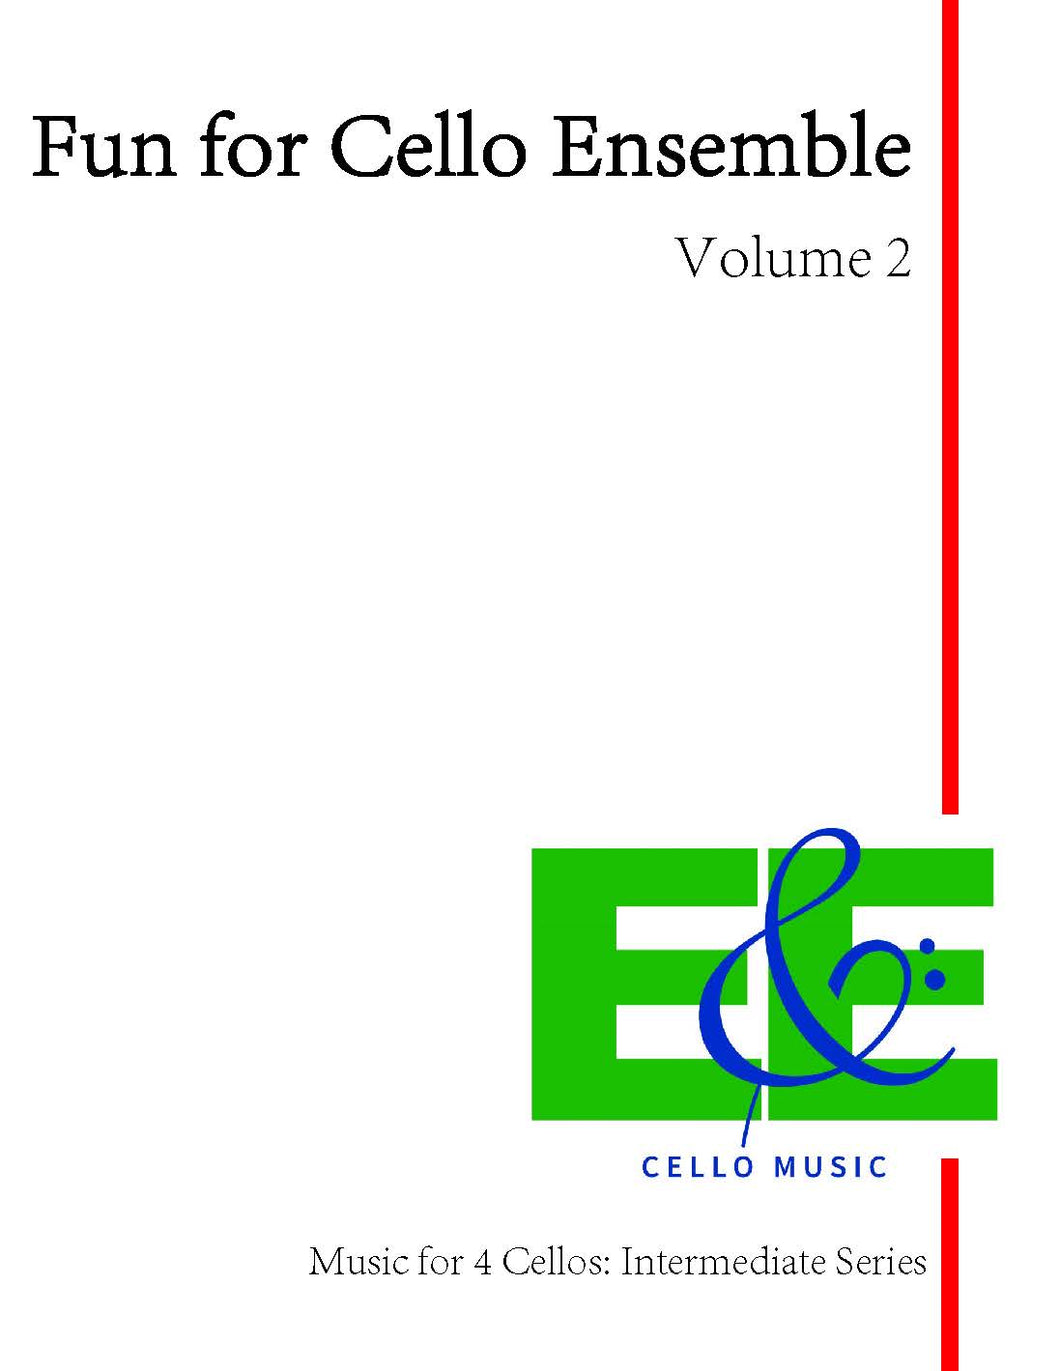 Fun for Cello Ensemble Vol. 2<br>Music for 4 Cellos:<br>Intermediate Series